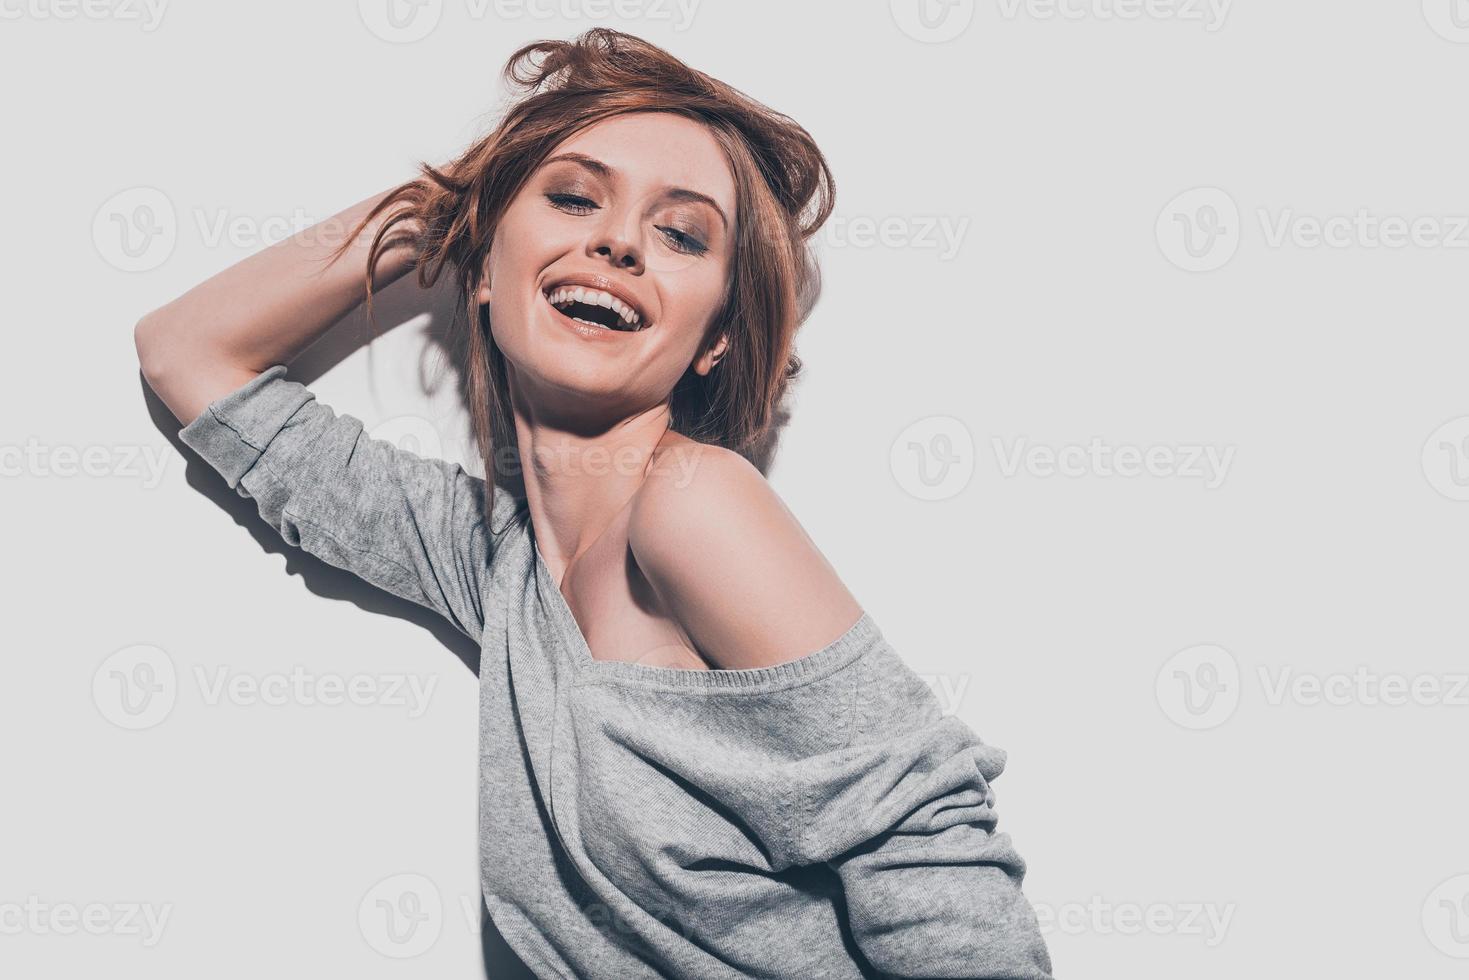 feliz belleza. Atractiva joven mujer sonriente sosteniendo la mano en el cabello y manteniendo los ojos cerrados mientras se enfrenta a un fondo gris foto